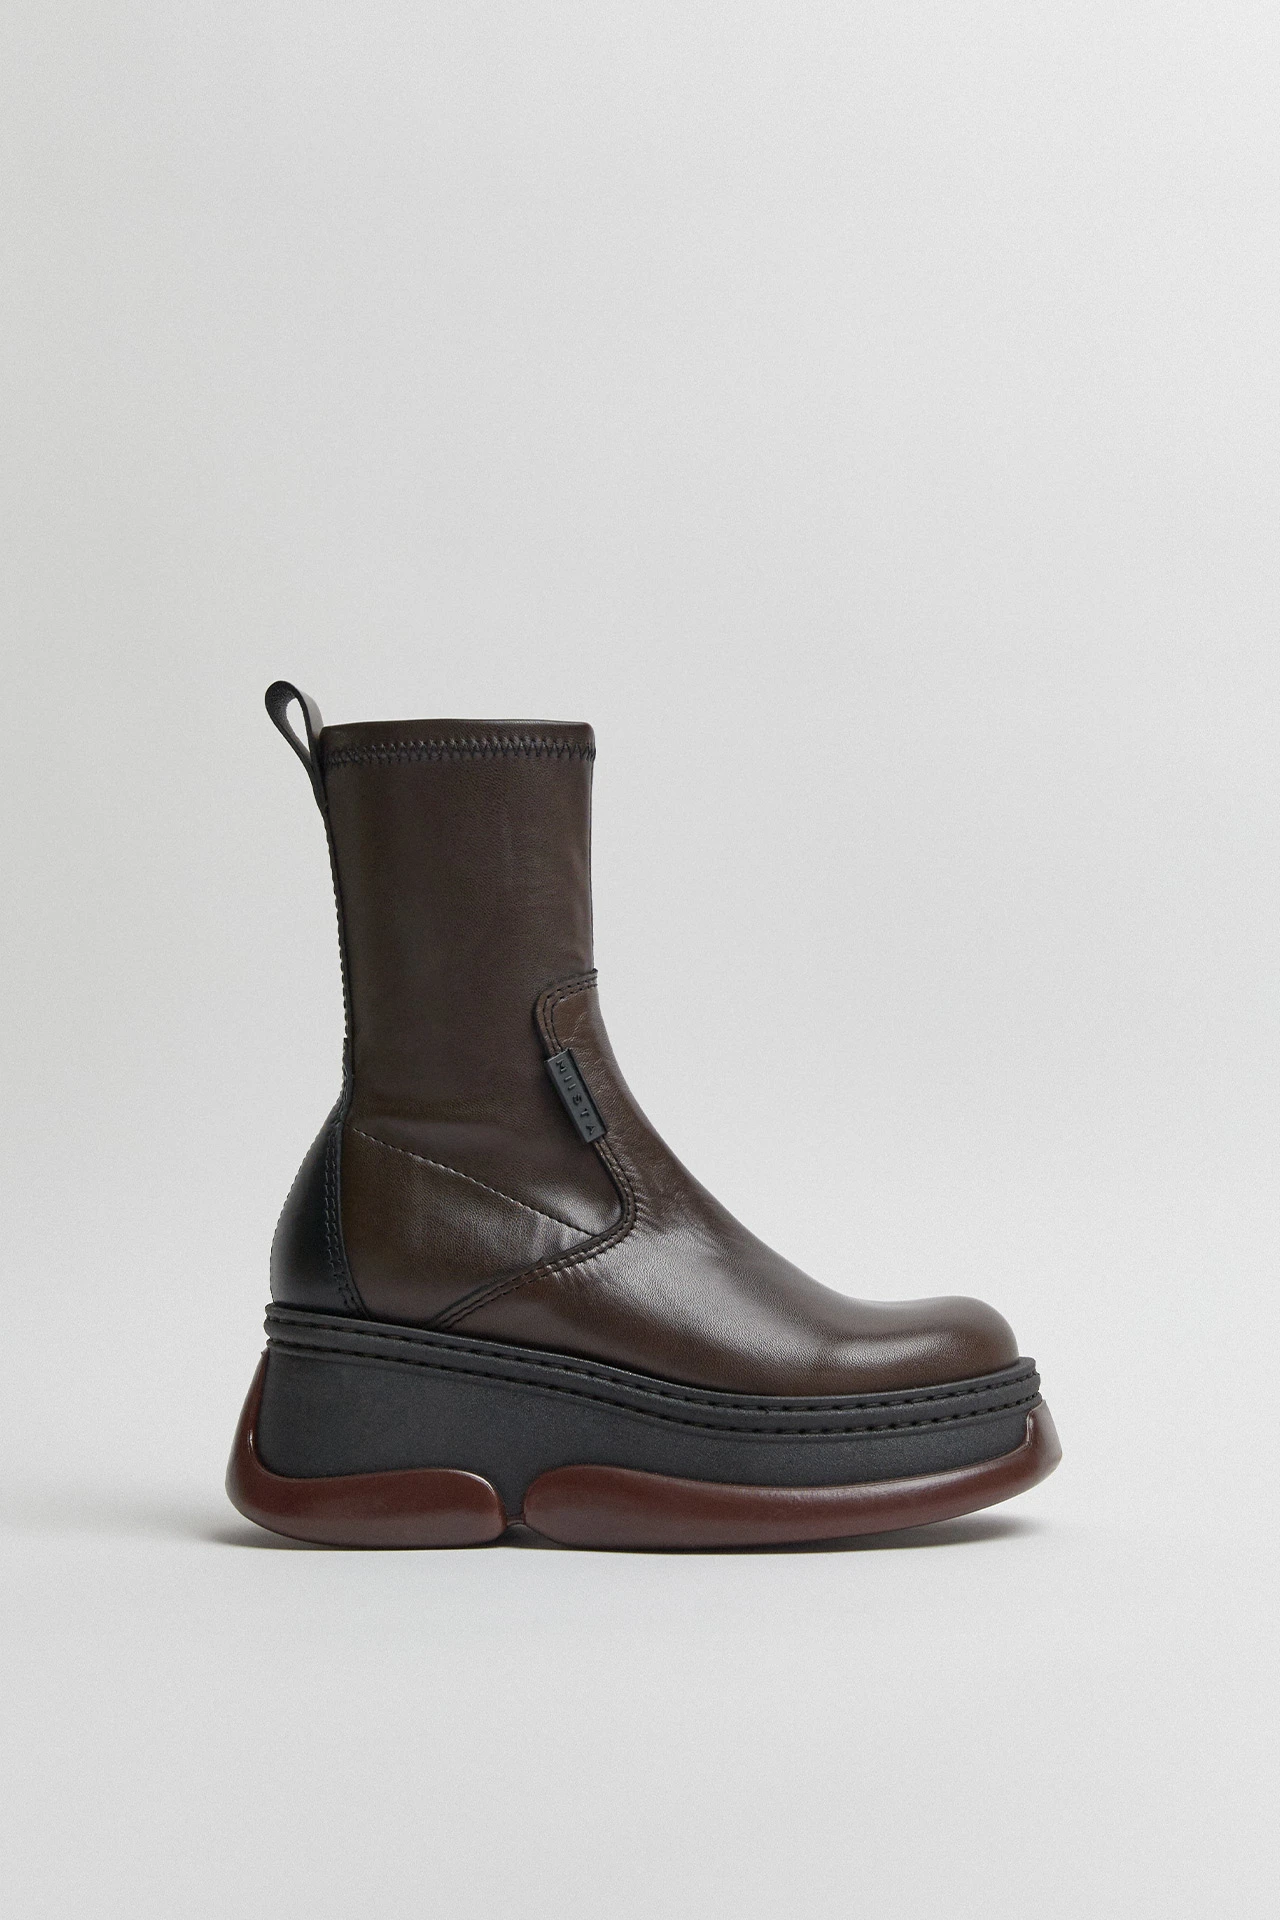 E8-kattrin-brown-boots-01